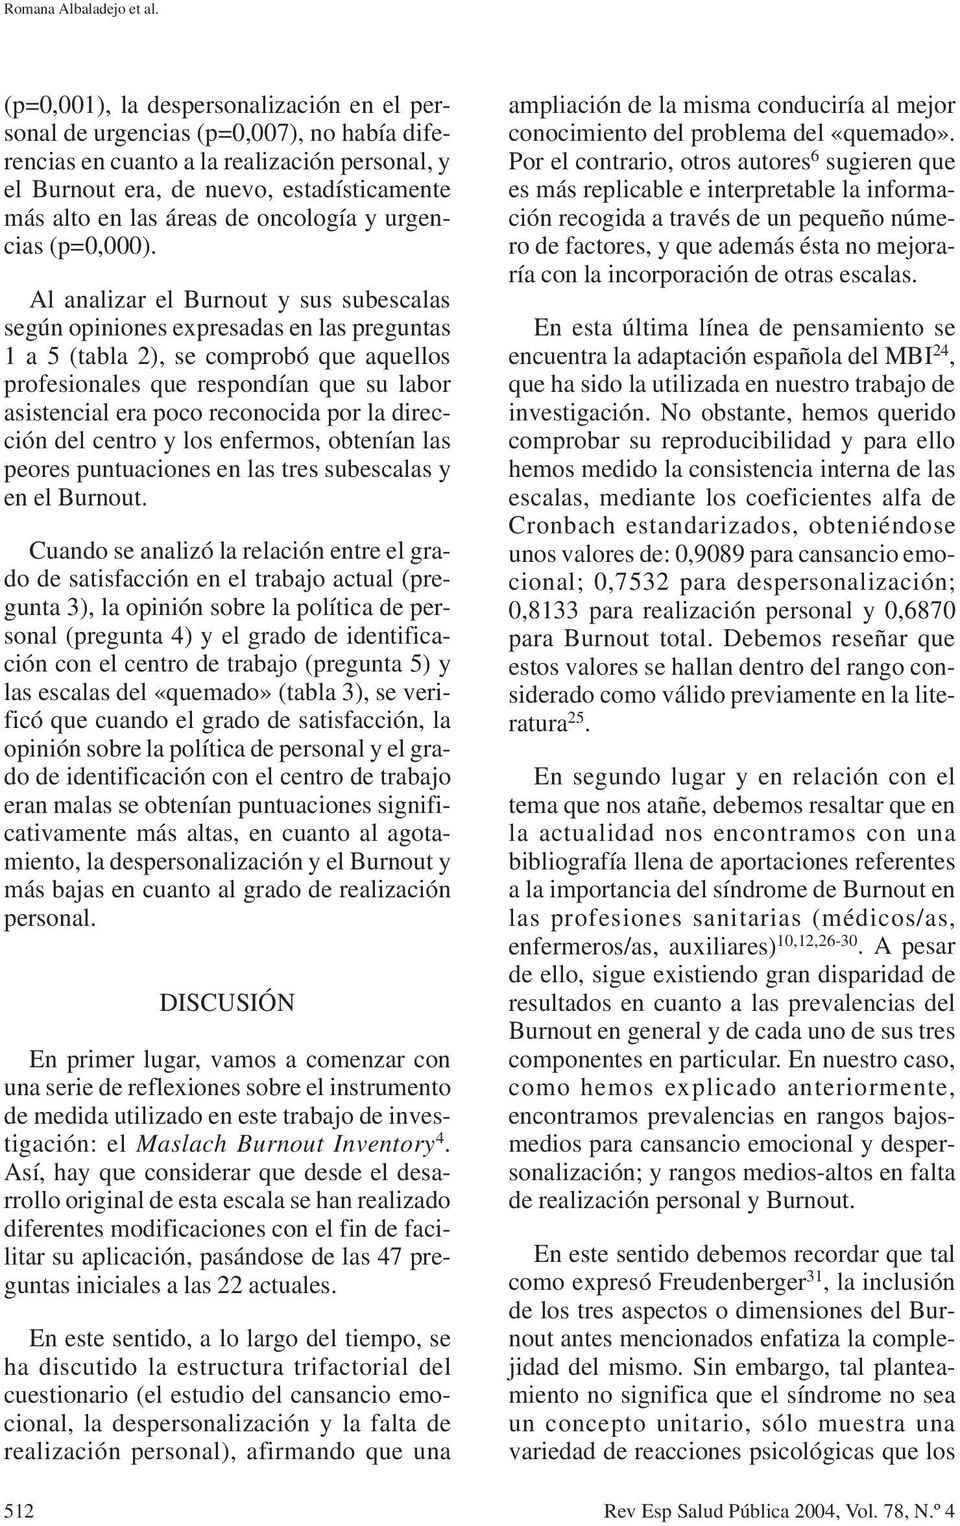 oncología y urgencias (p=0,000).